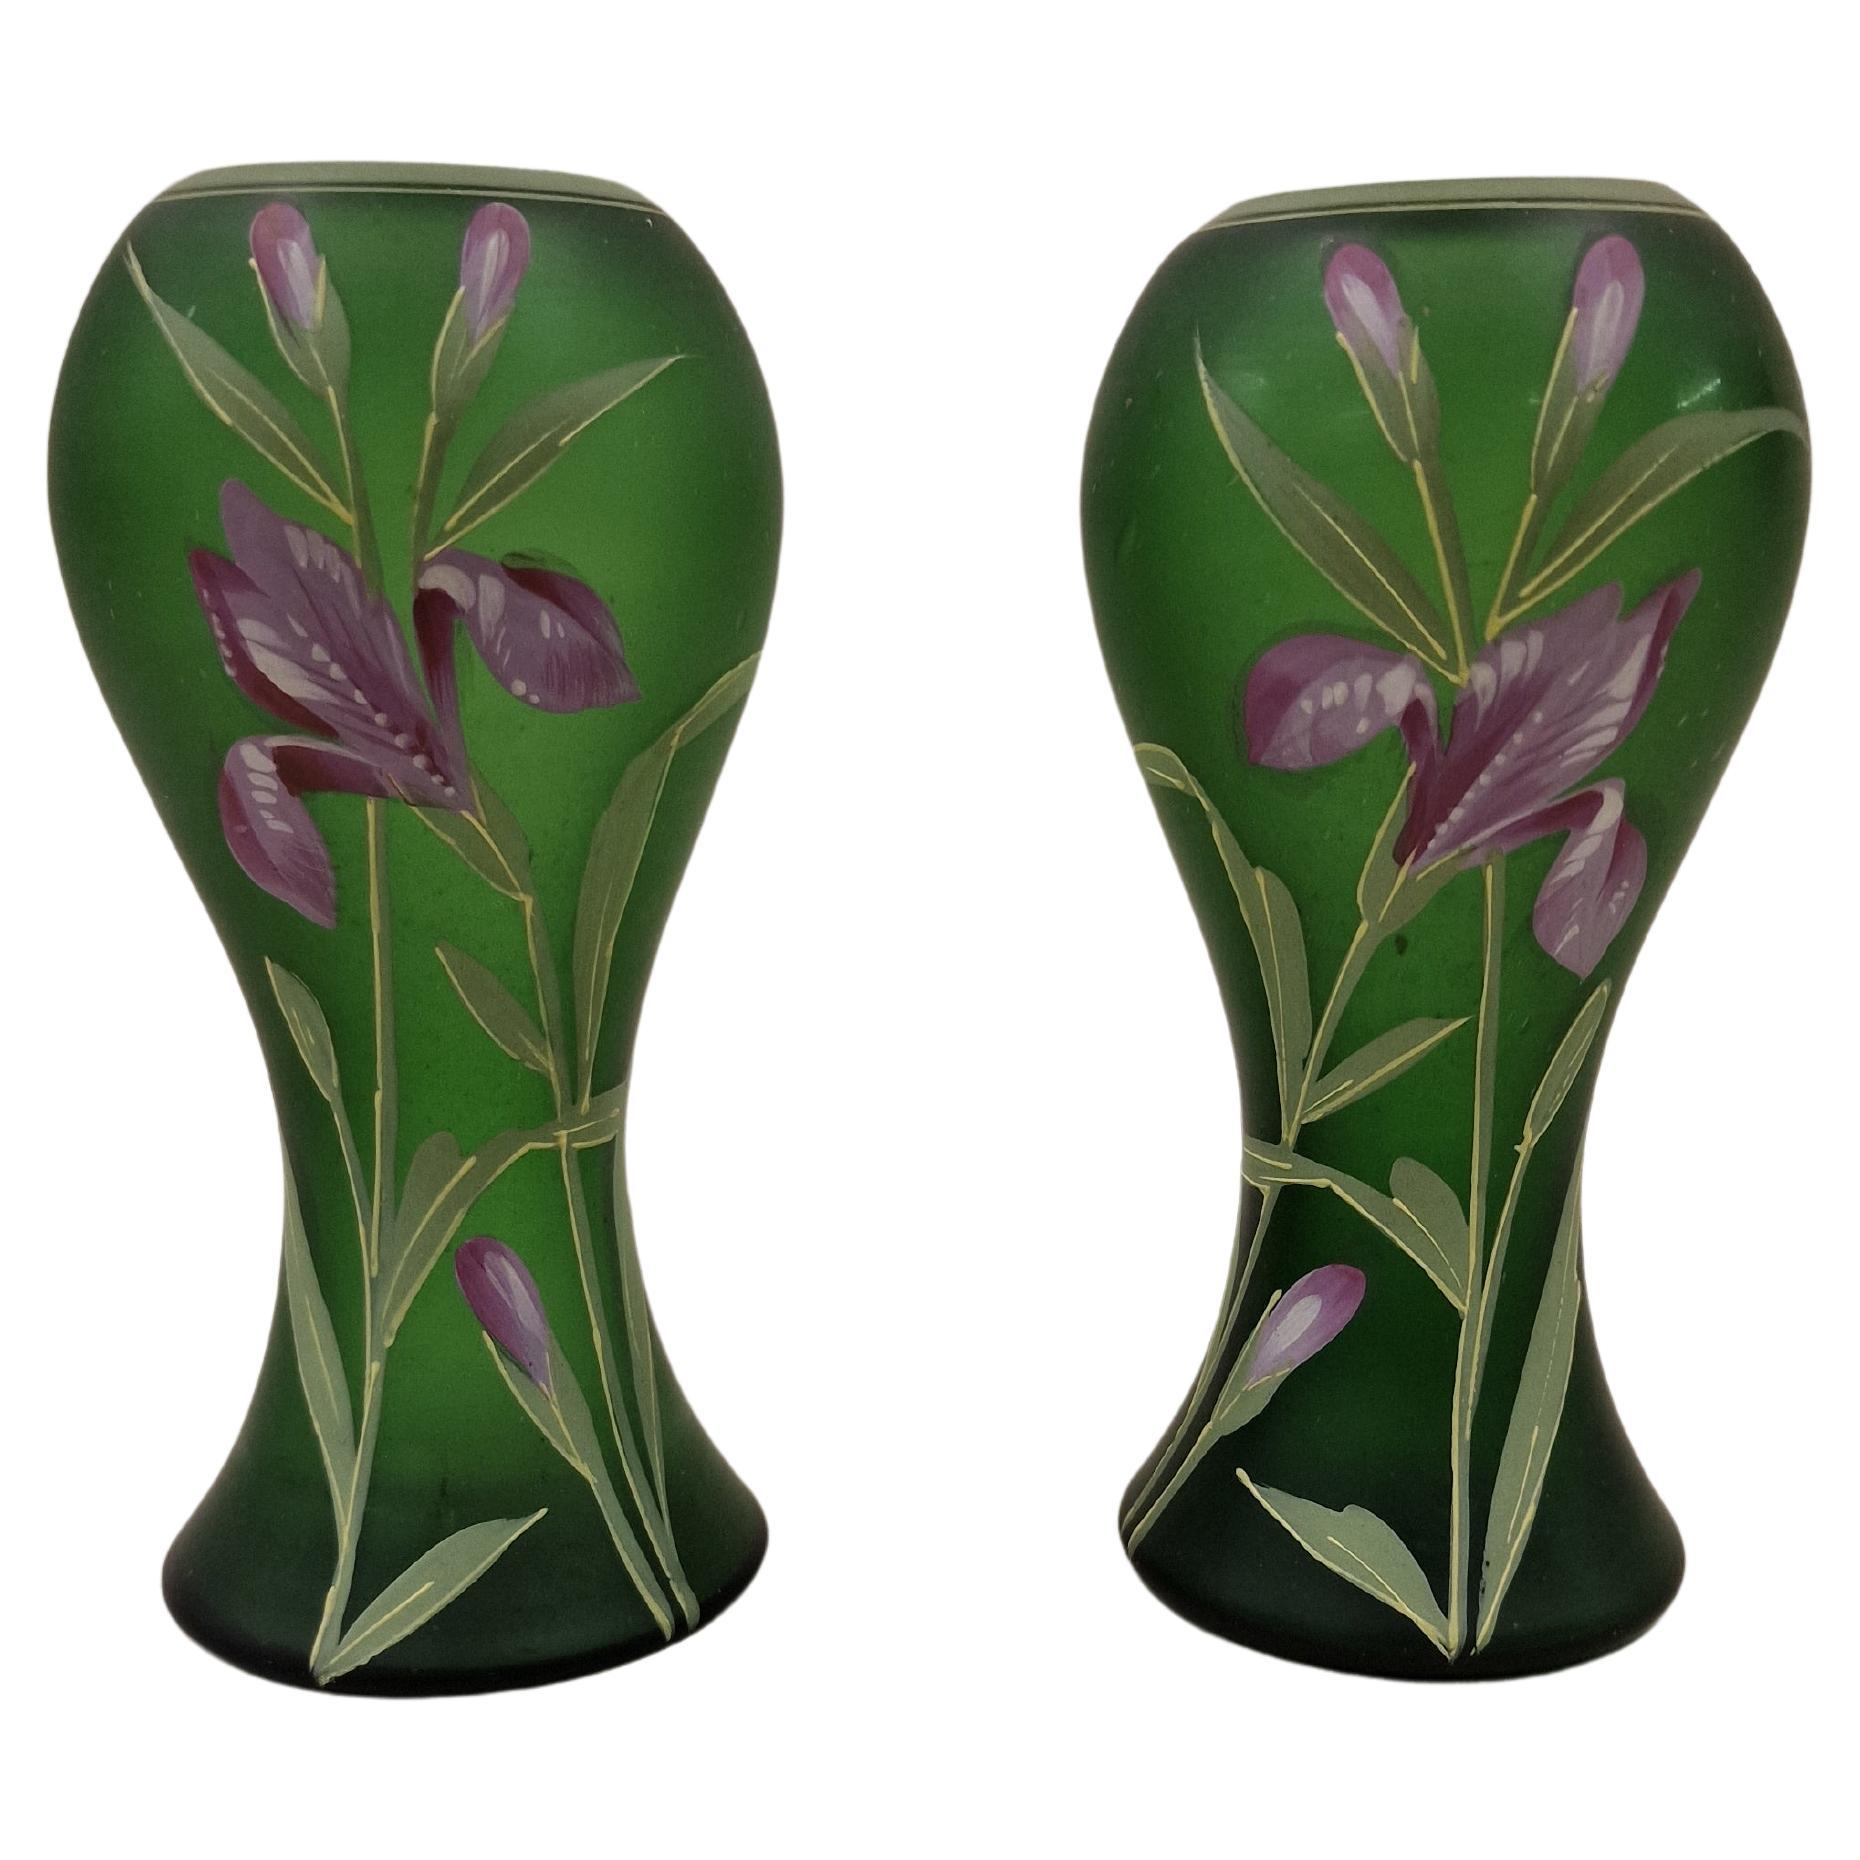 Pair of Flower Vases, Hand Painted, Art Nouveau/Jugendstil, Legras, 1910, France